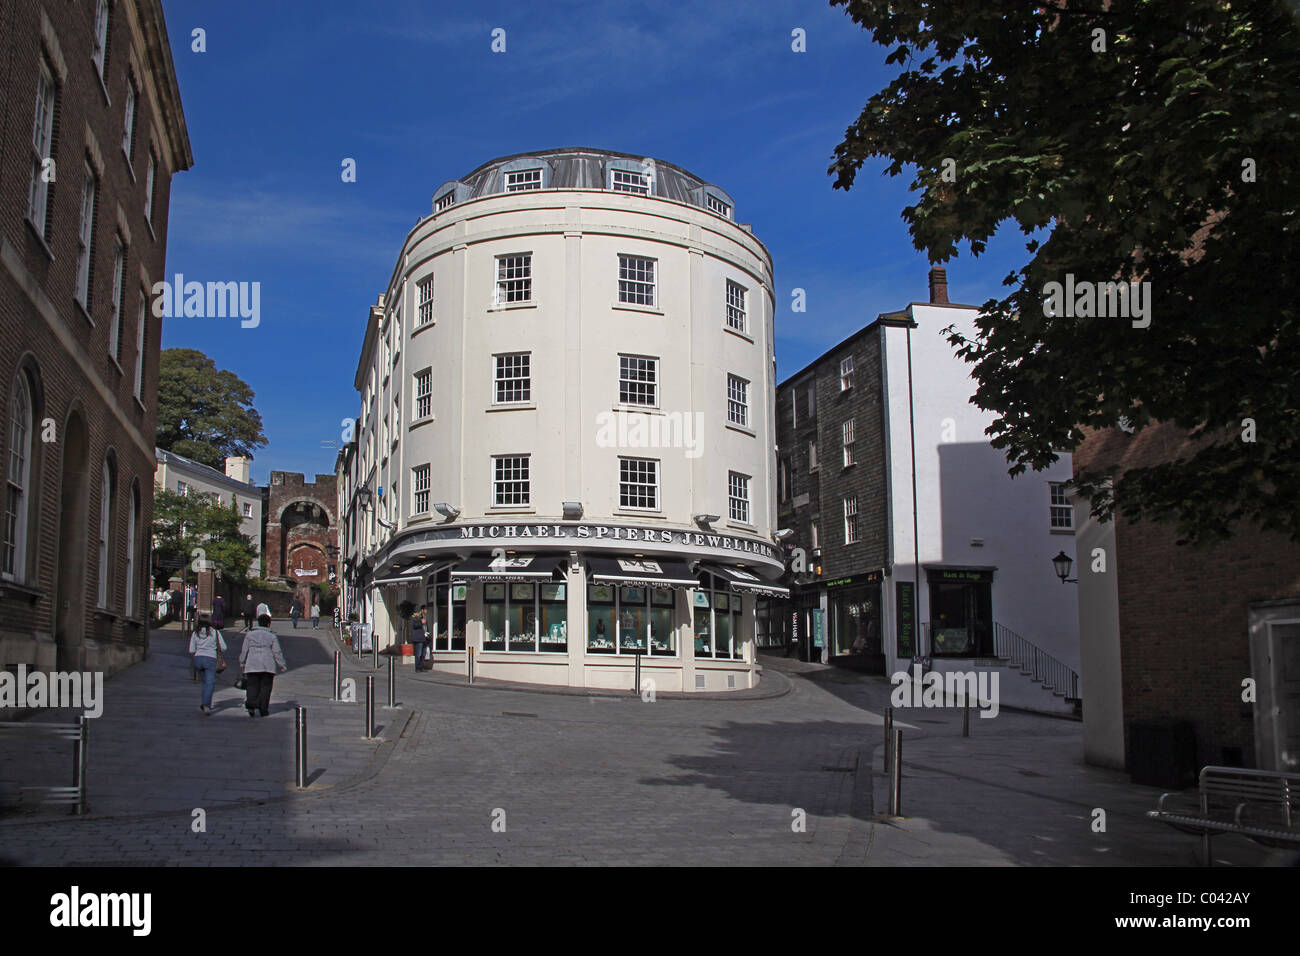 La Boutique des Joailliers distinctif sur Castle Street, Exeter, Devon, England, UK Banque D'Images